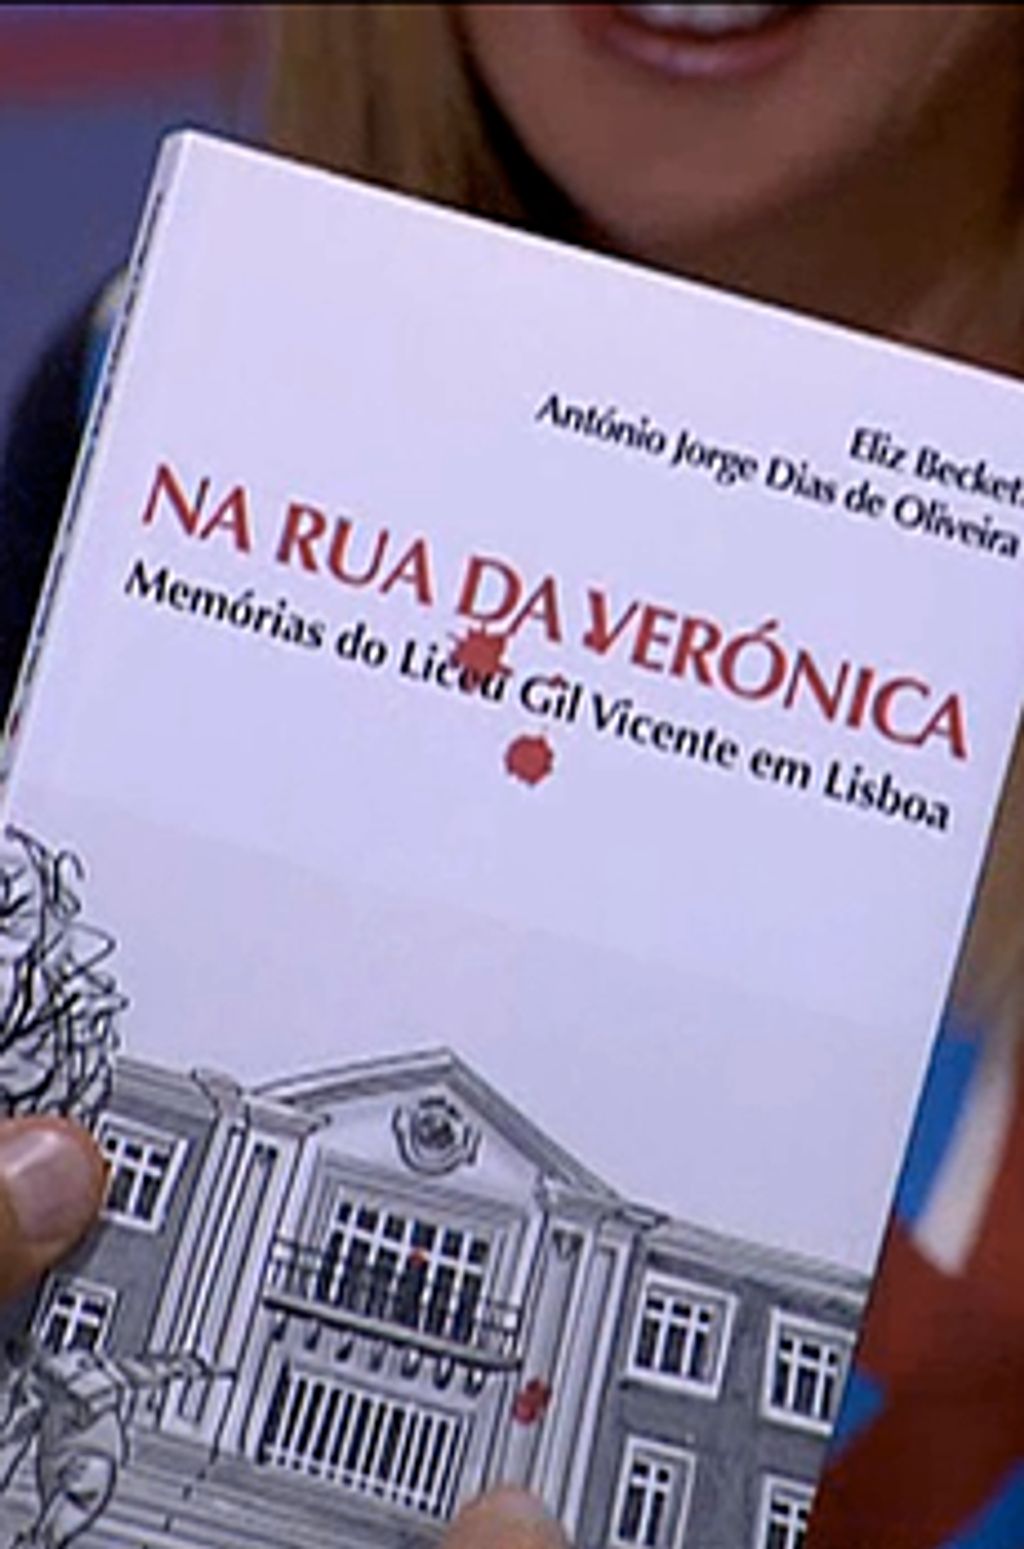 Os livros de Marcelo Rebelo de Sousa «Na Rua da Verónica - memórias do Liceu Gil Vicente em Lisboa»